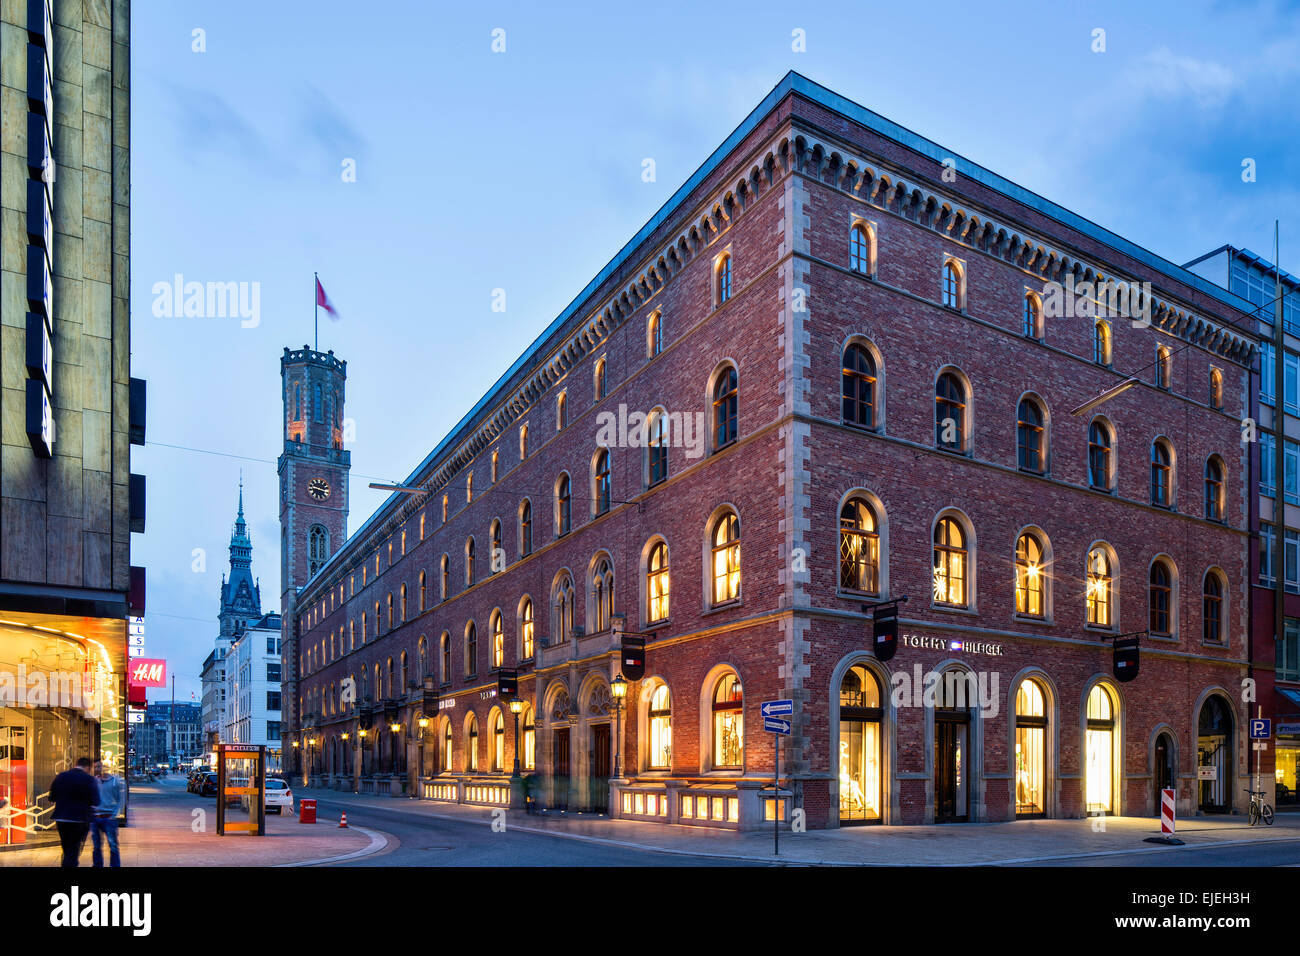 Vieux Bureau de poste, 1847, dans le style Renaissance italienne, aujourd'hui un centre commercial chic, Hambourg, Allemagne Banque D'Images